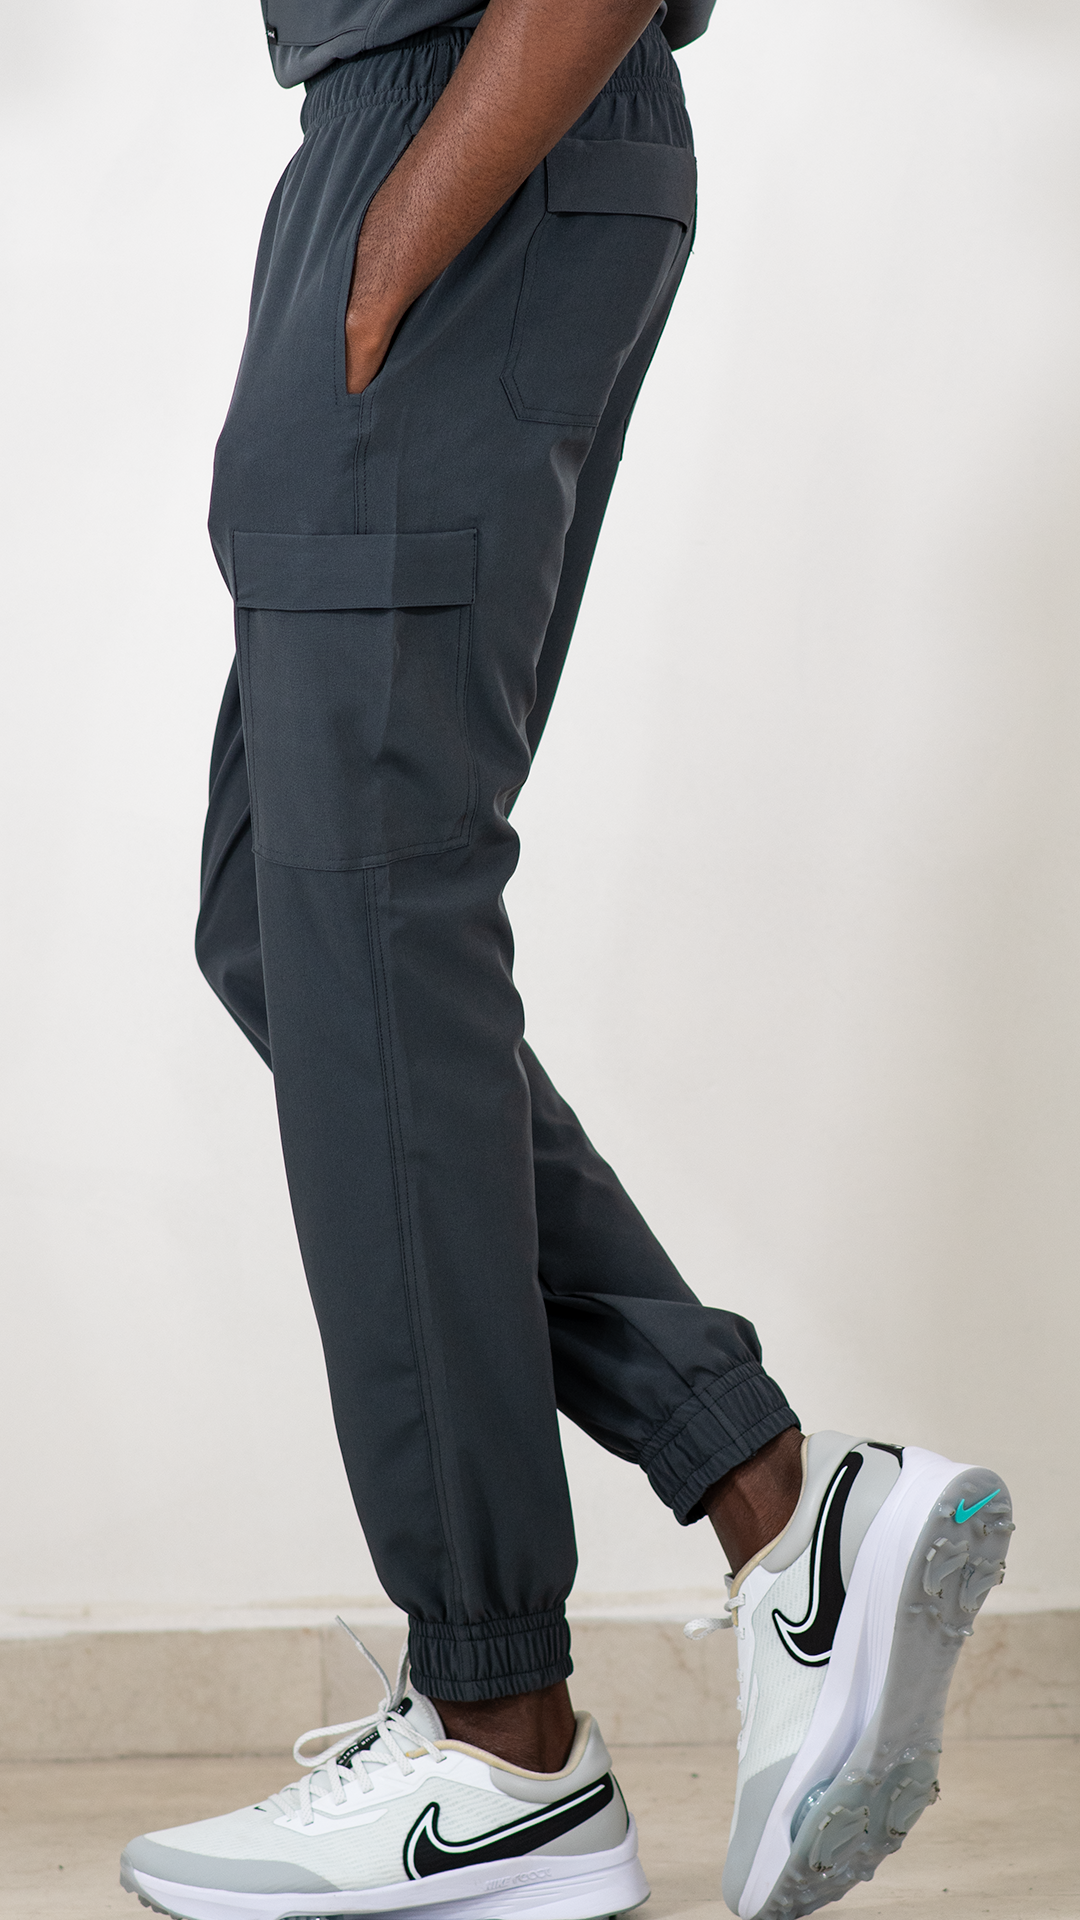 Men's Jogger FW Pants 501 6 pockets Oxford